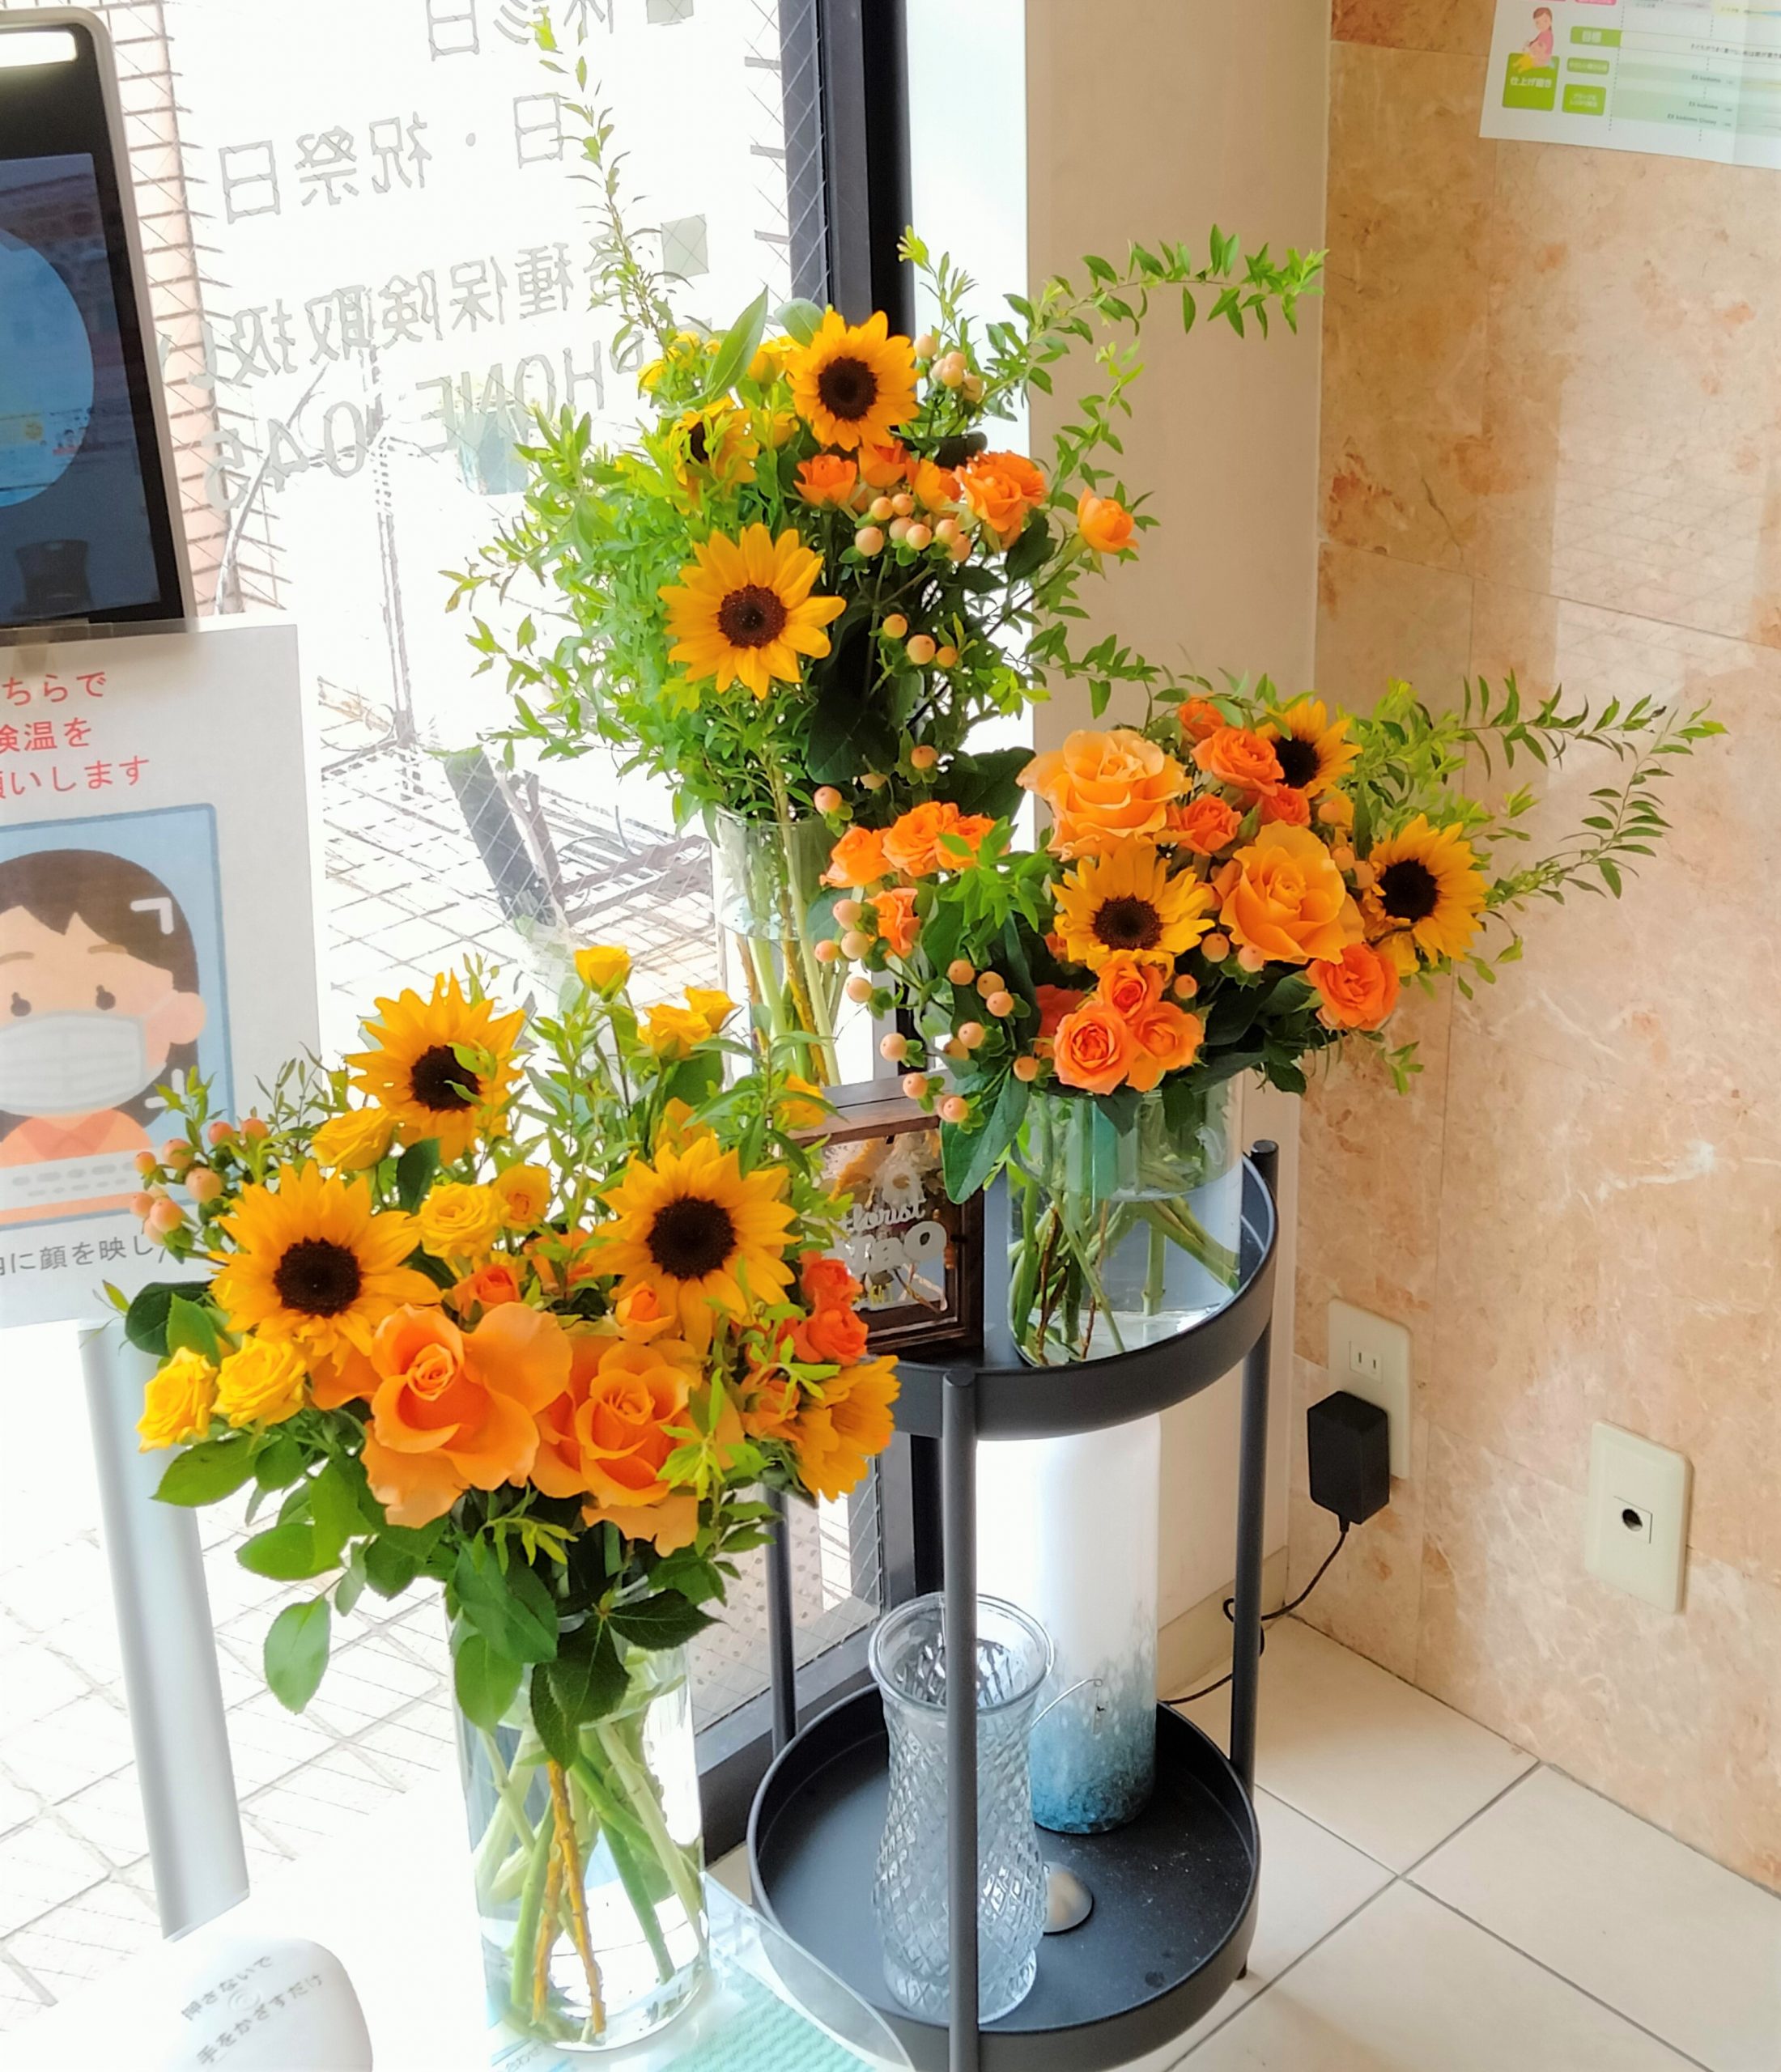 横浜市中区柏葉にあるミネ歯科さんへ受付花を配達しました。【横浜花屋の花束・スタンド花・胡蝶蘭・バルーン・アレンジメント配達事例941】